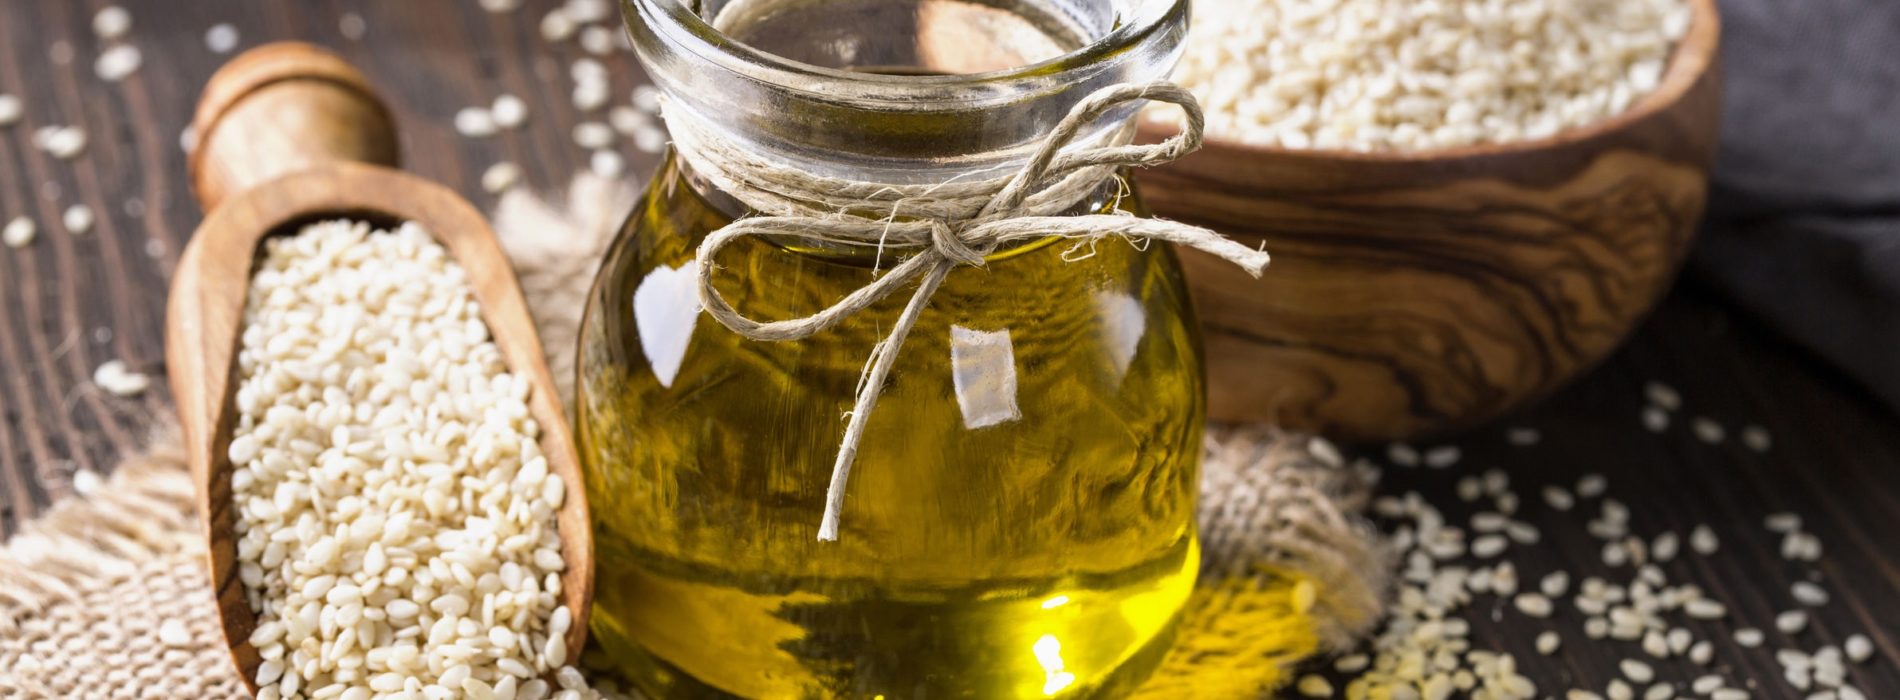 Olej sezamowy do smażenia potraw – Wady i zalety stosowania